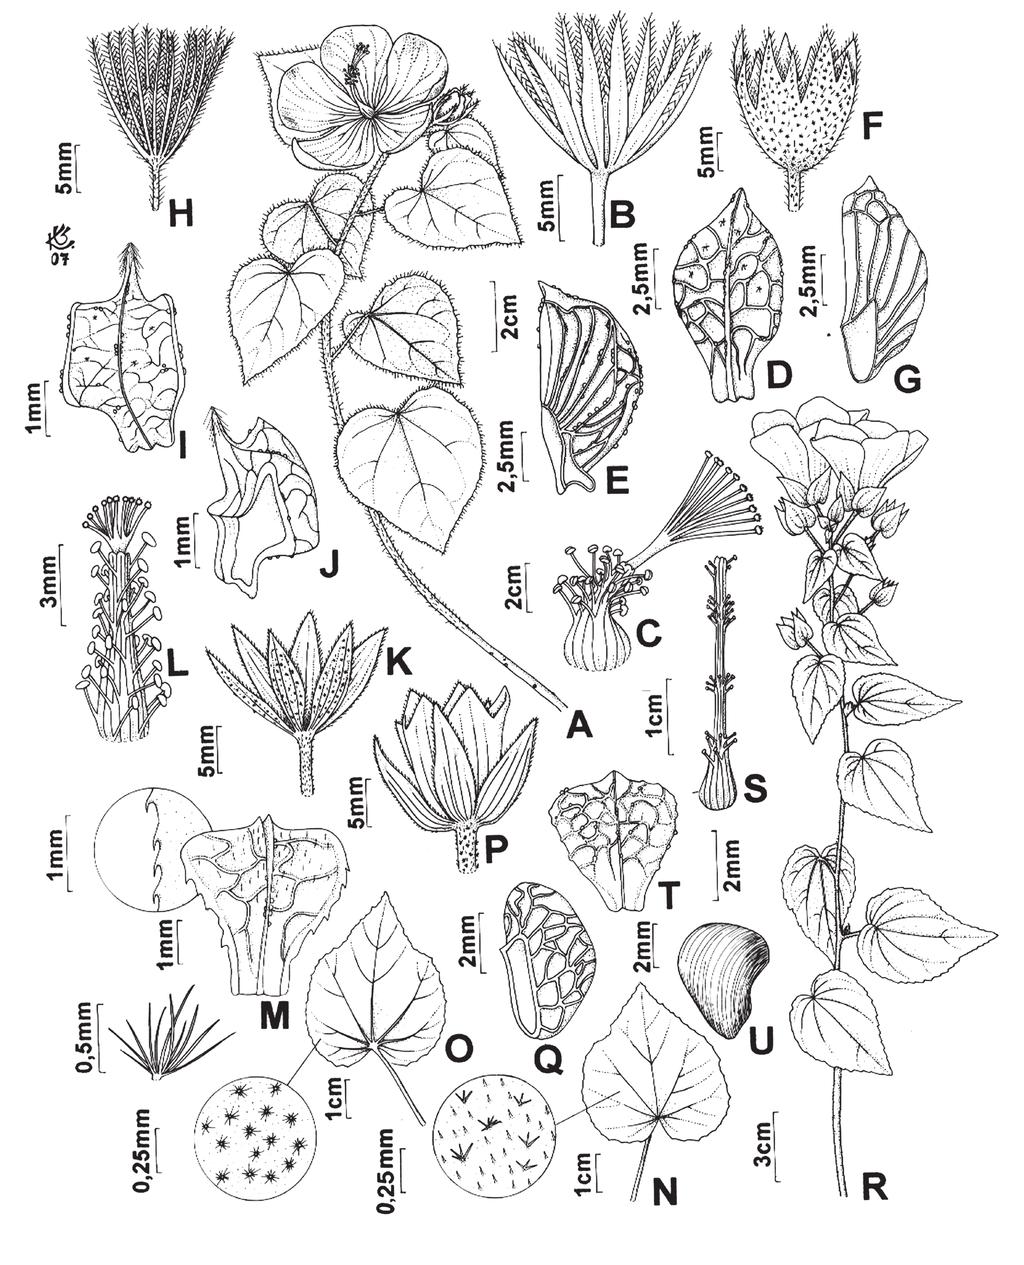 Flora de Grão-Mogol, Minas Gerais: Malvaceae 69 Fig. 2. MALVACEAE. A-E. Pavonia rosa-campestris: A. Ramo com flores. B. Epicálice. C. tubo estaminal. D. Mericarpo, vista dorsal. E. Mericarpo, vista lateral.